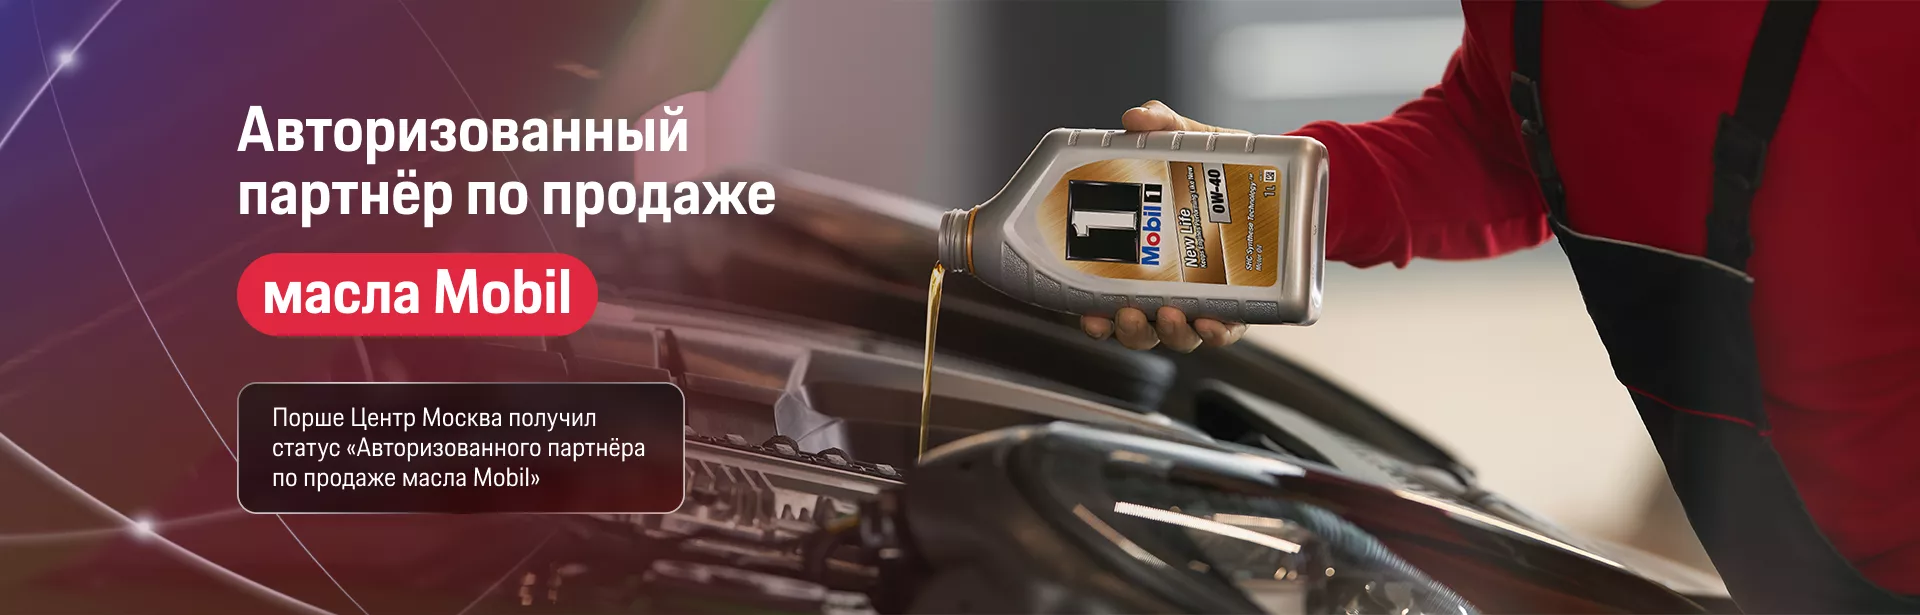 Порше Центр Москва получил статус «Авторизованного партнёра по продаже масла Mobil»